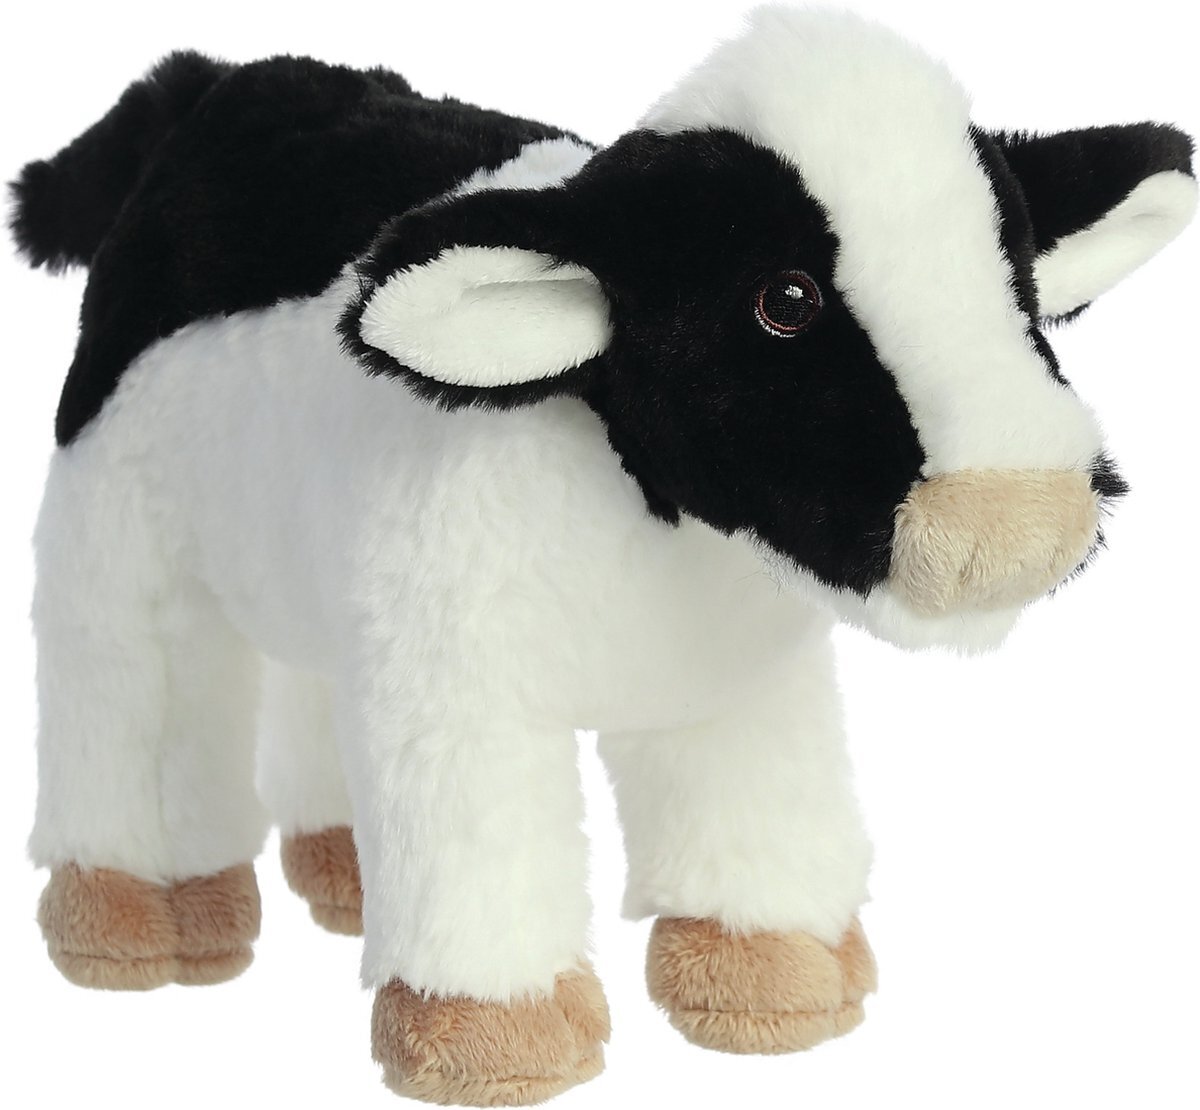 Aurora Pluche dieren knuffels koe van 26 cm - Knuffeldieren koeien speelgoed